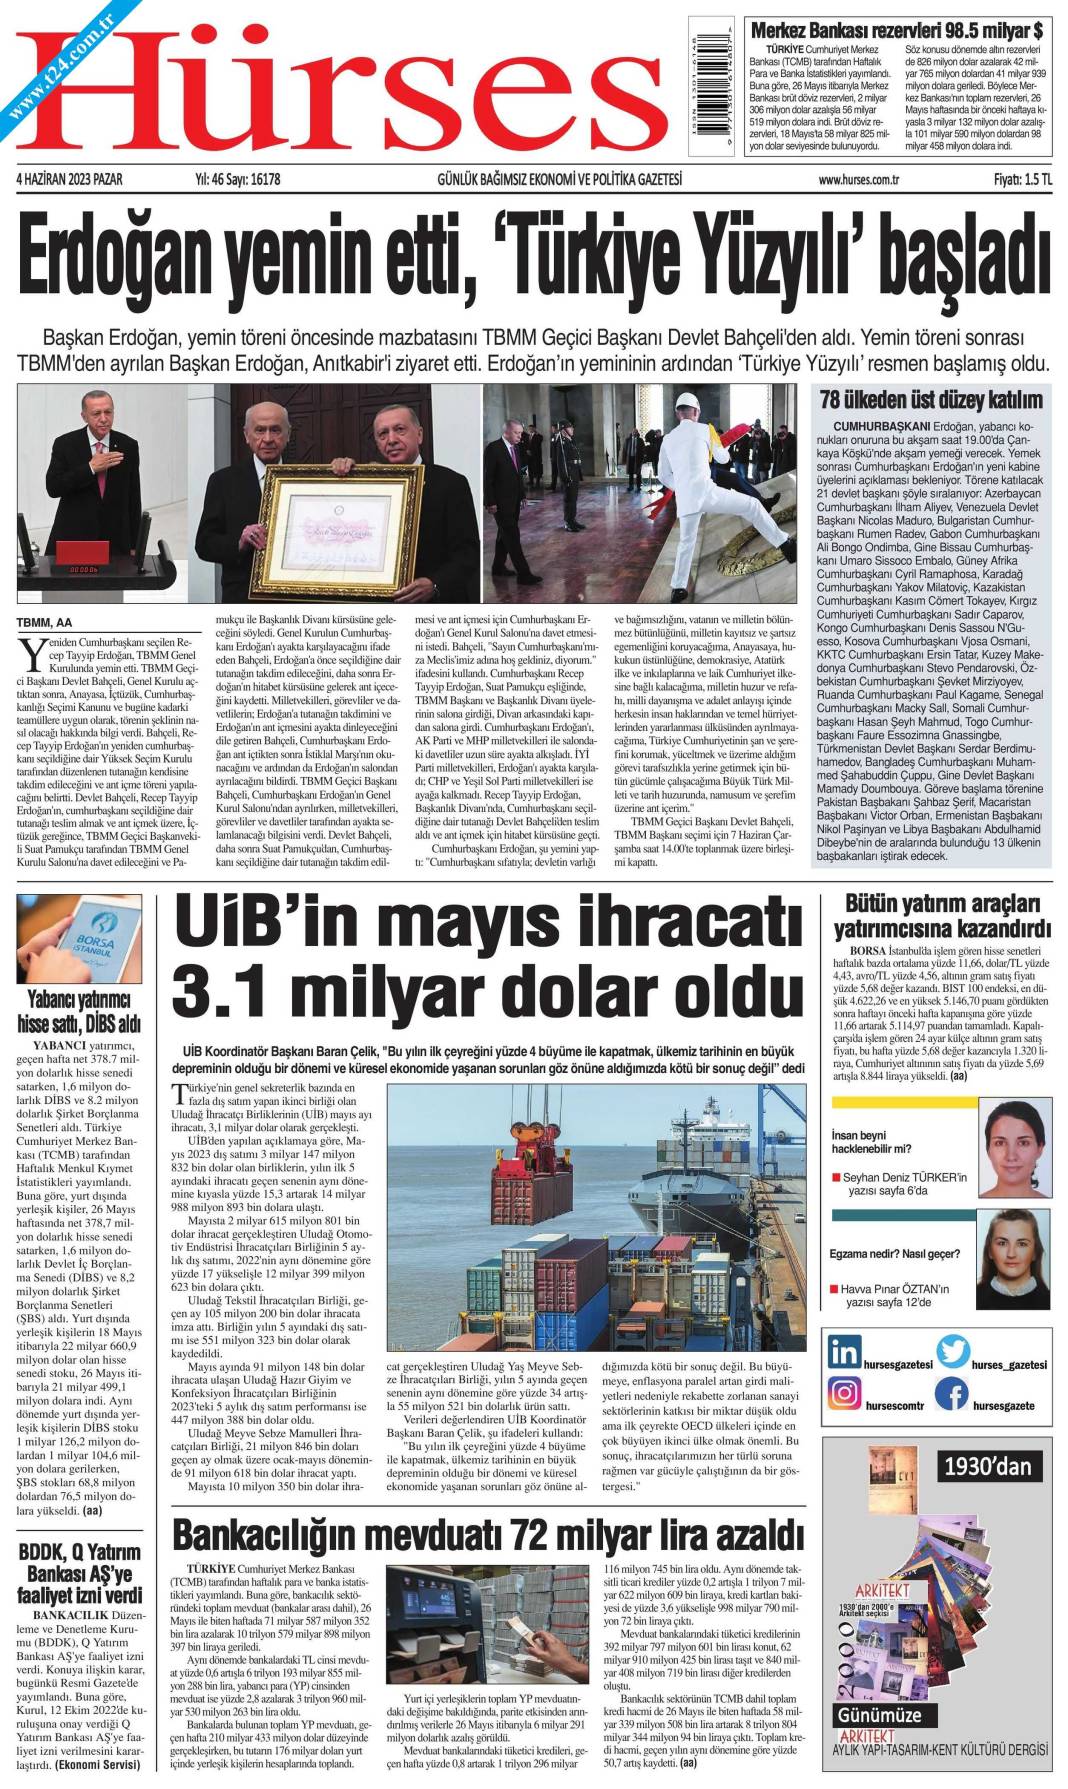 Gazeteler, Erdoğan’ın açıkladığı yeni kabine listesini manşetlerine nasıl taşıdı? İşte günün manşetleri 11